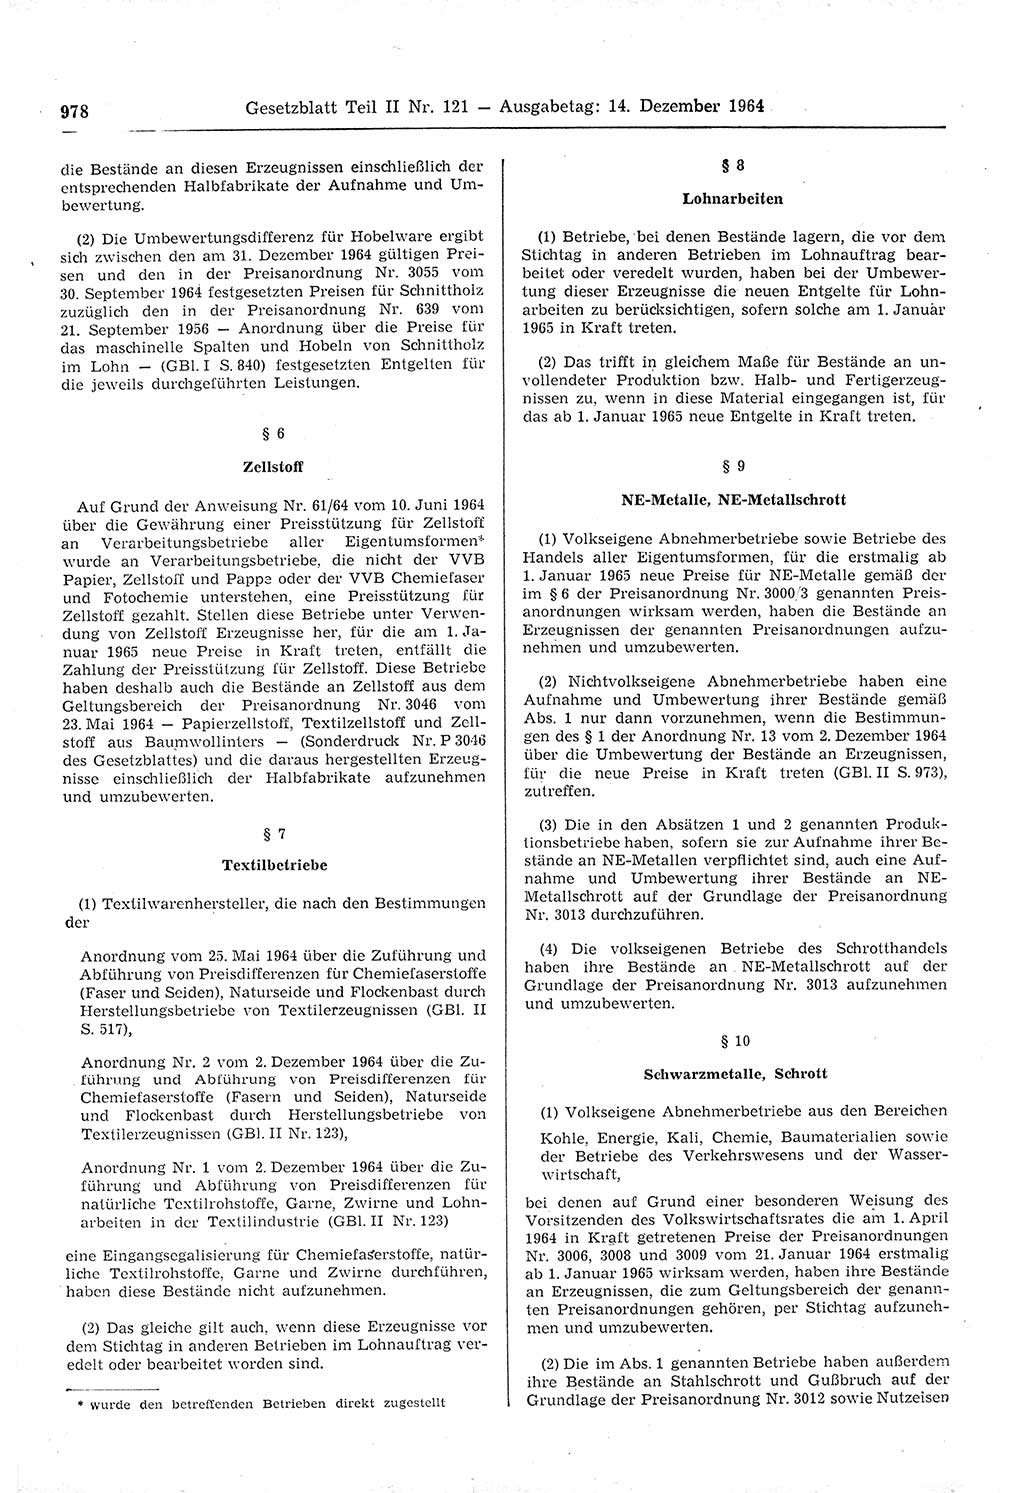 Gesetzblatt (GBl.) der Deutschen Demokratischen Republik (DDR) Teil ⅠⅠ 1964, Seite 978 (GBl. DDR ⅠⅠ 1964, S. 978)